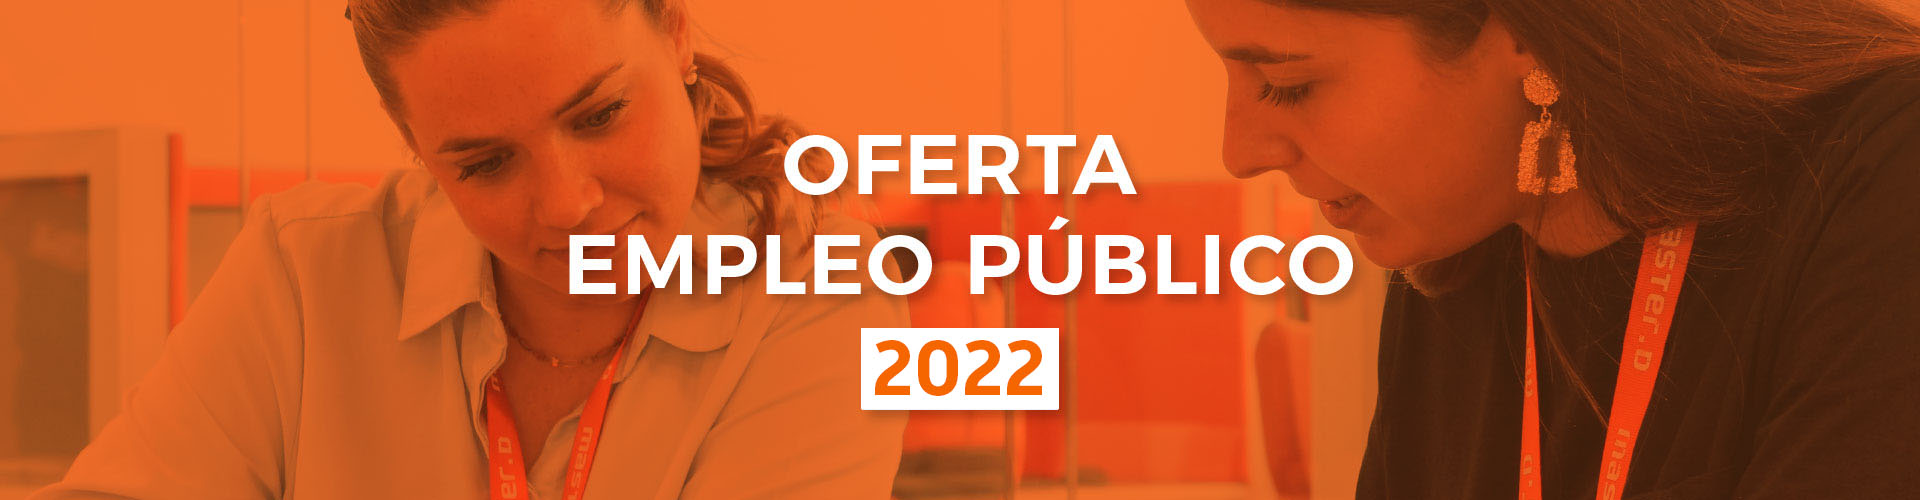 oferta de empleo publico 2022